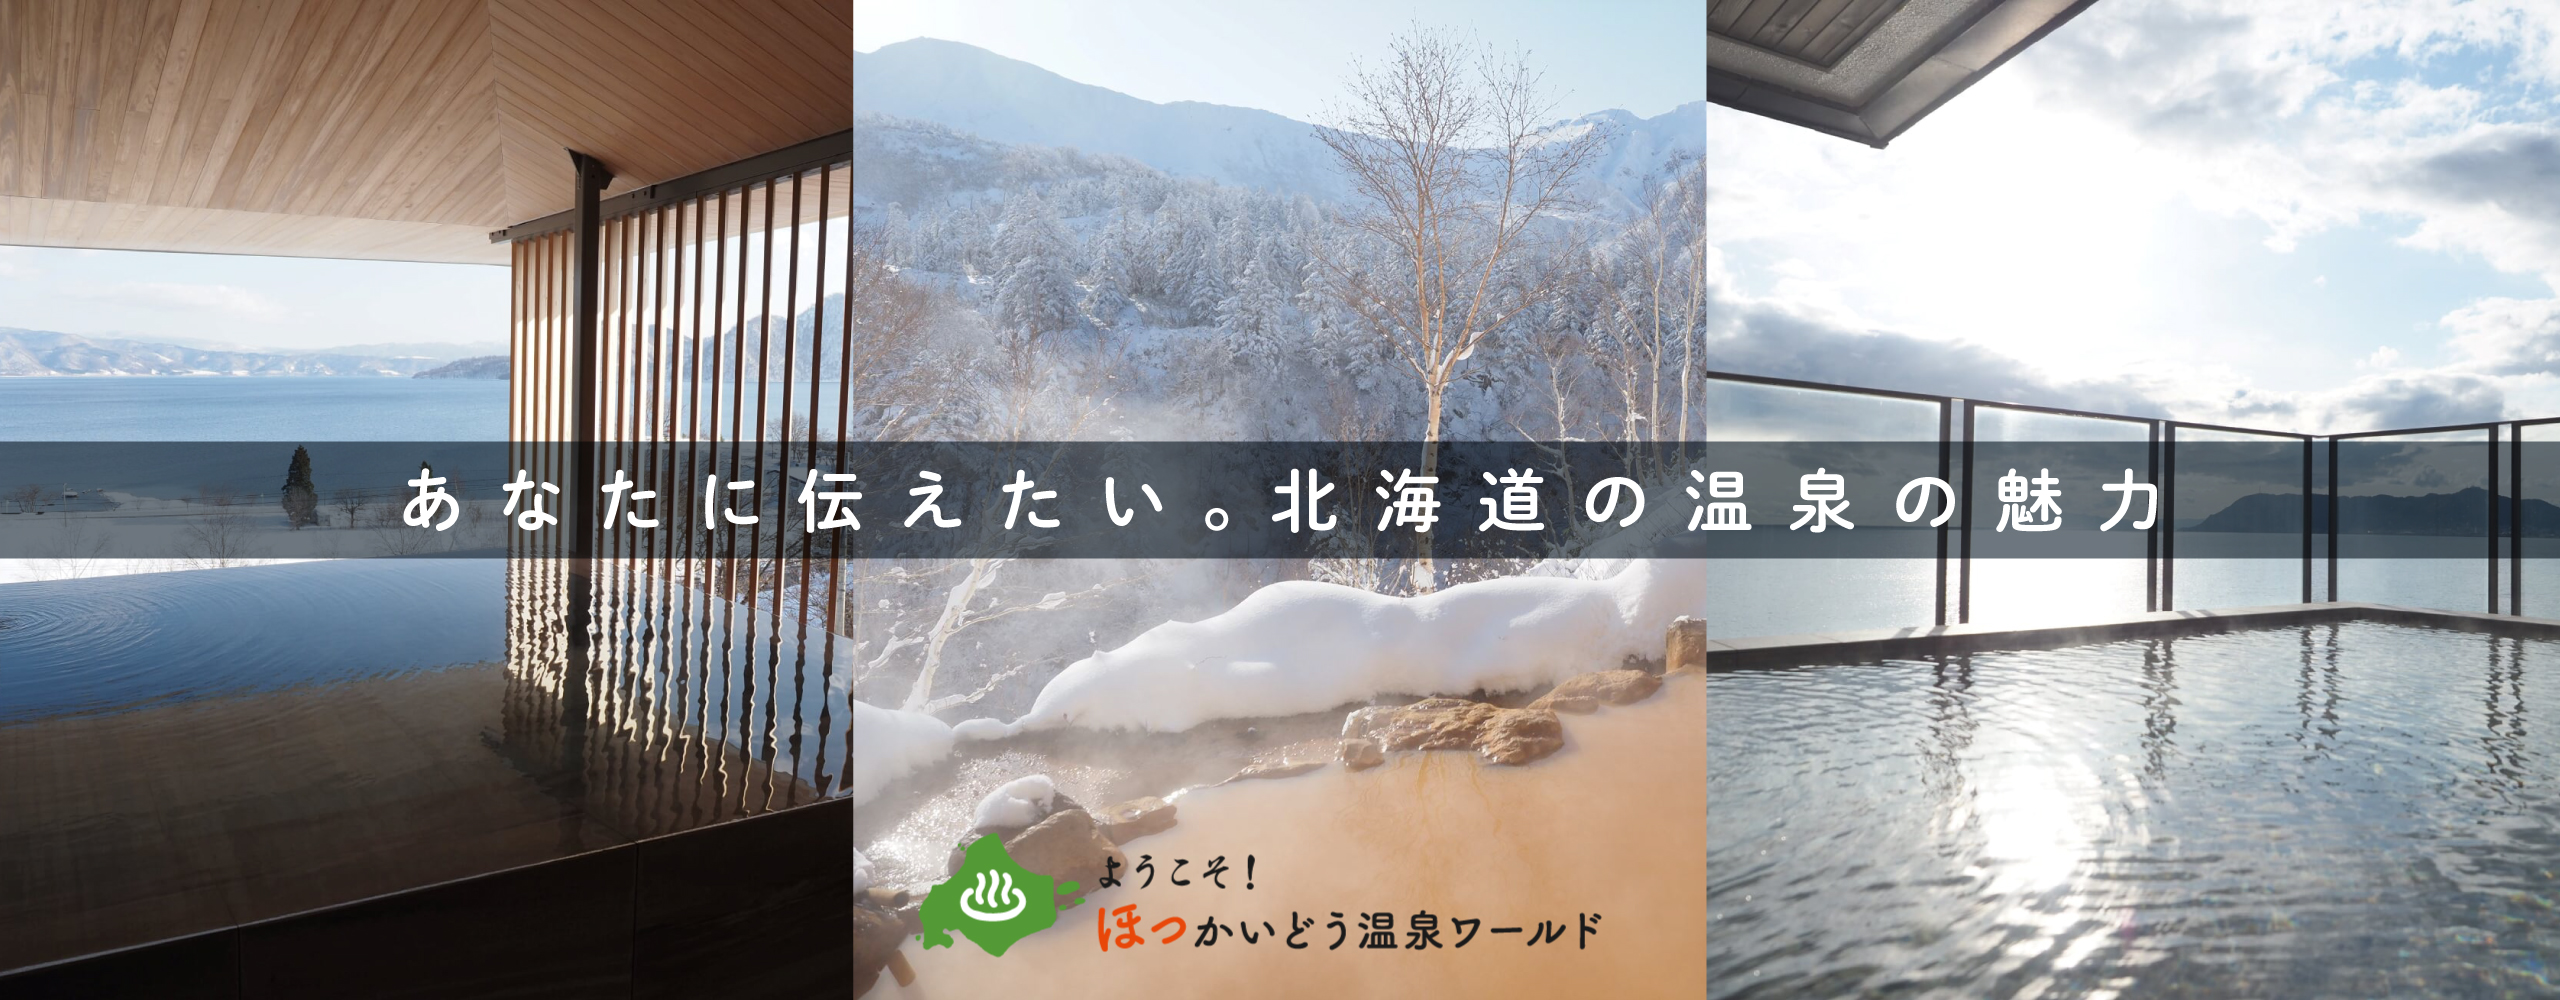 あなたに伝えたい。北海道の温泉の魅力